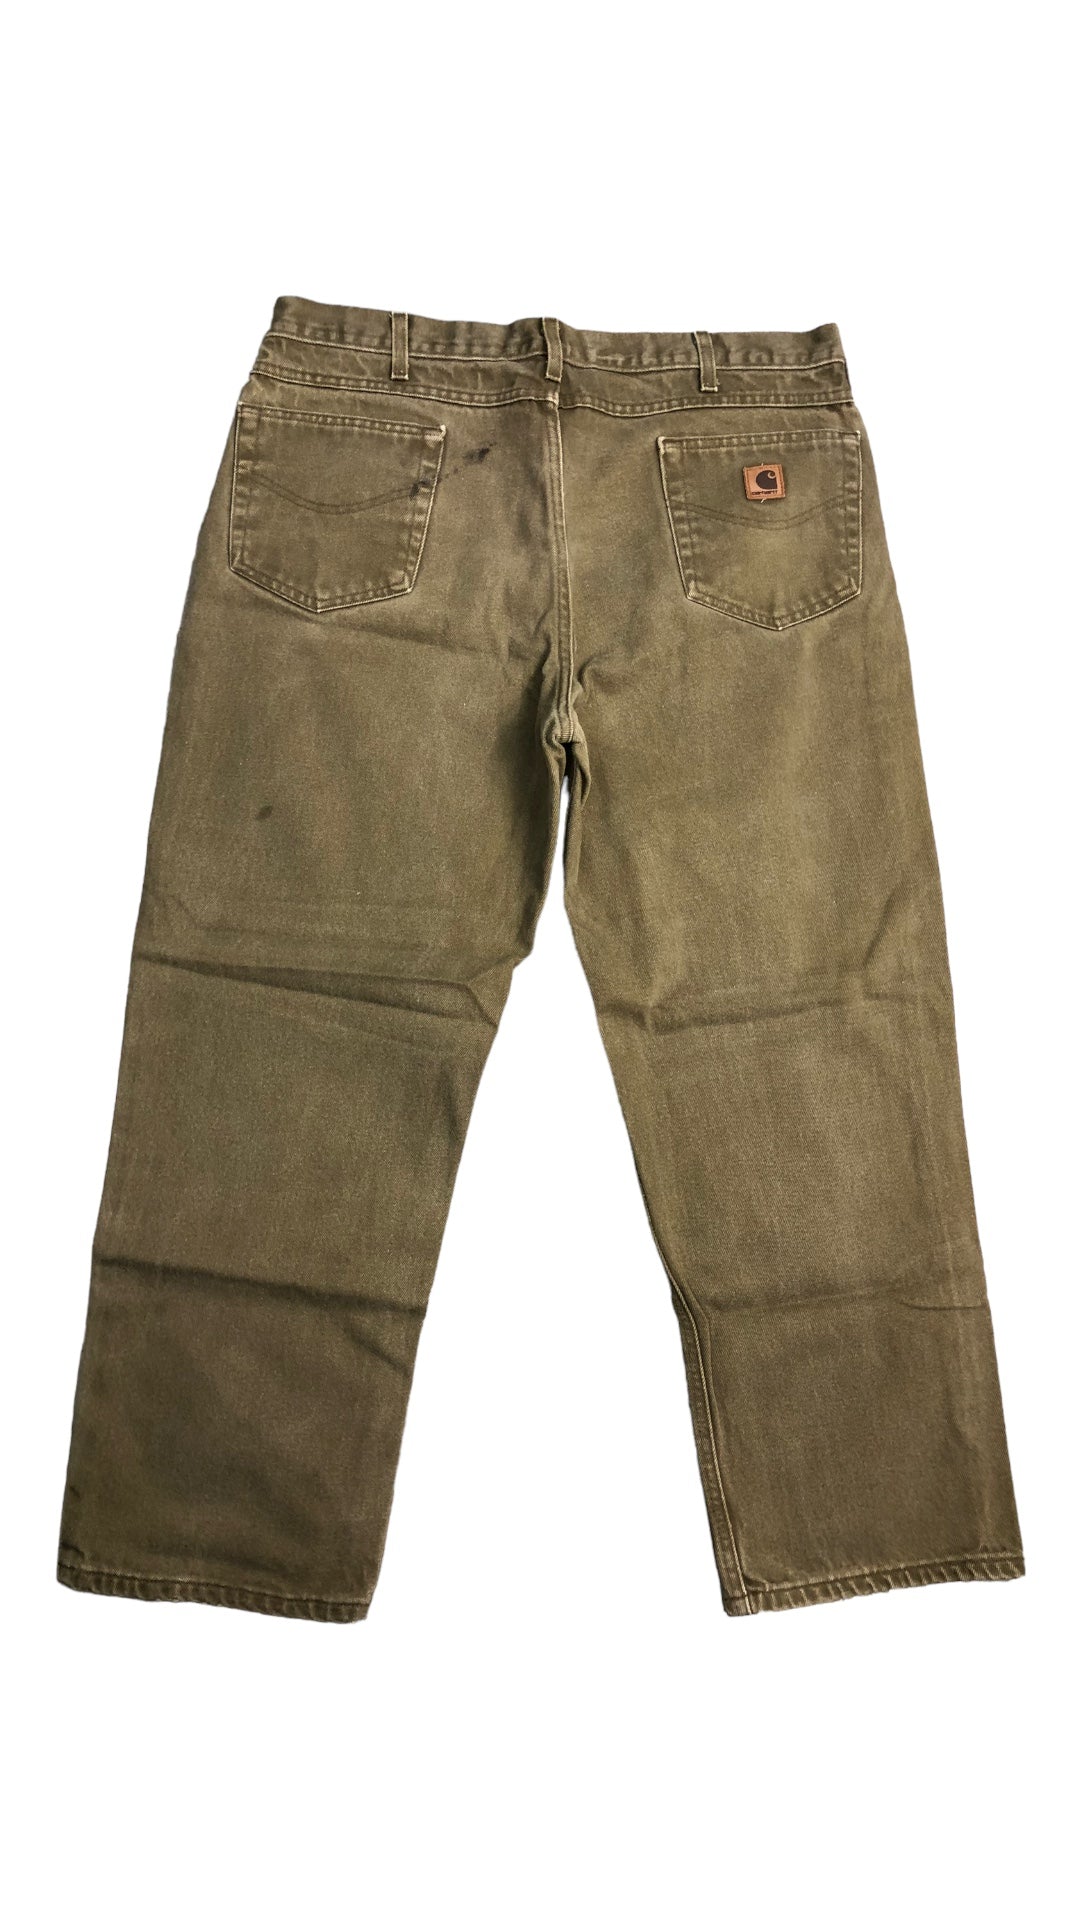 VTG Khaki Carhartt Jeans Sz 39x29